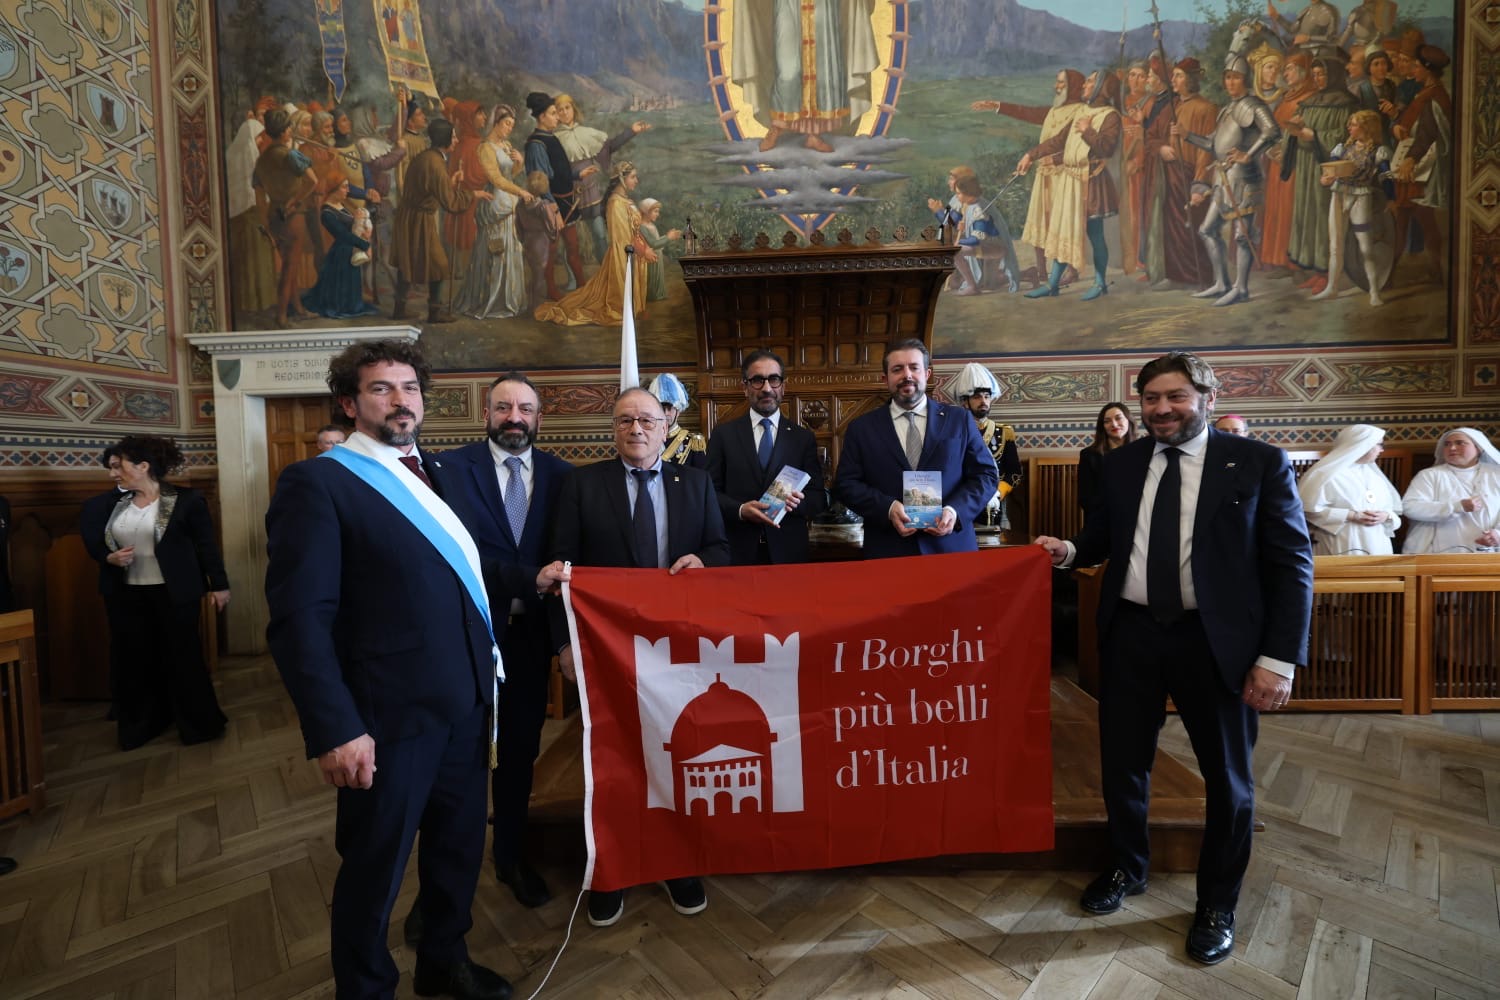 Issata la bandiera de “I Borghi più belli d’Italia